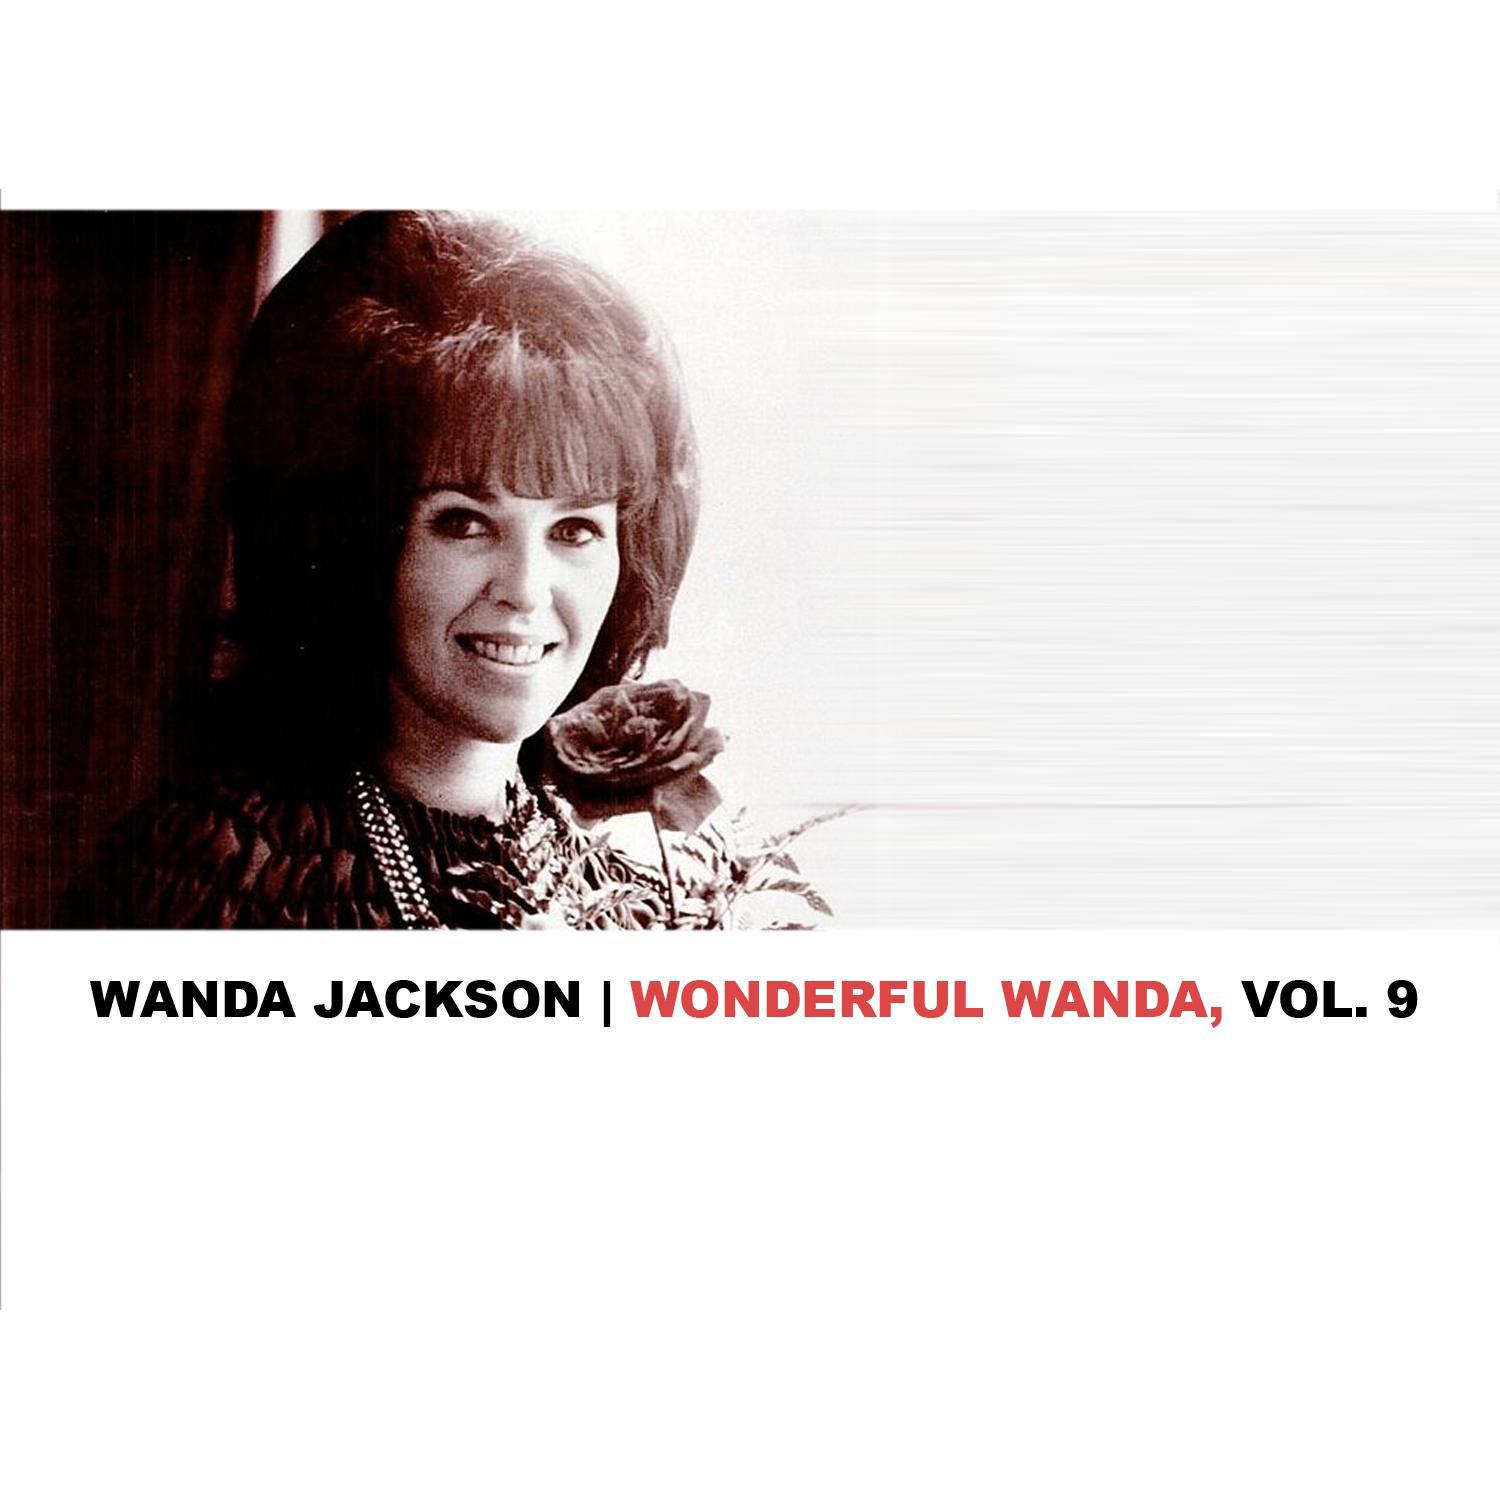 Wonderful Wanda, Vol. 9